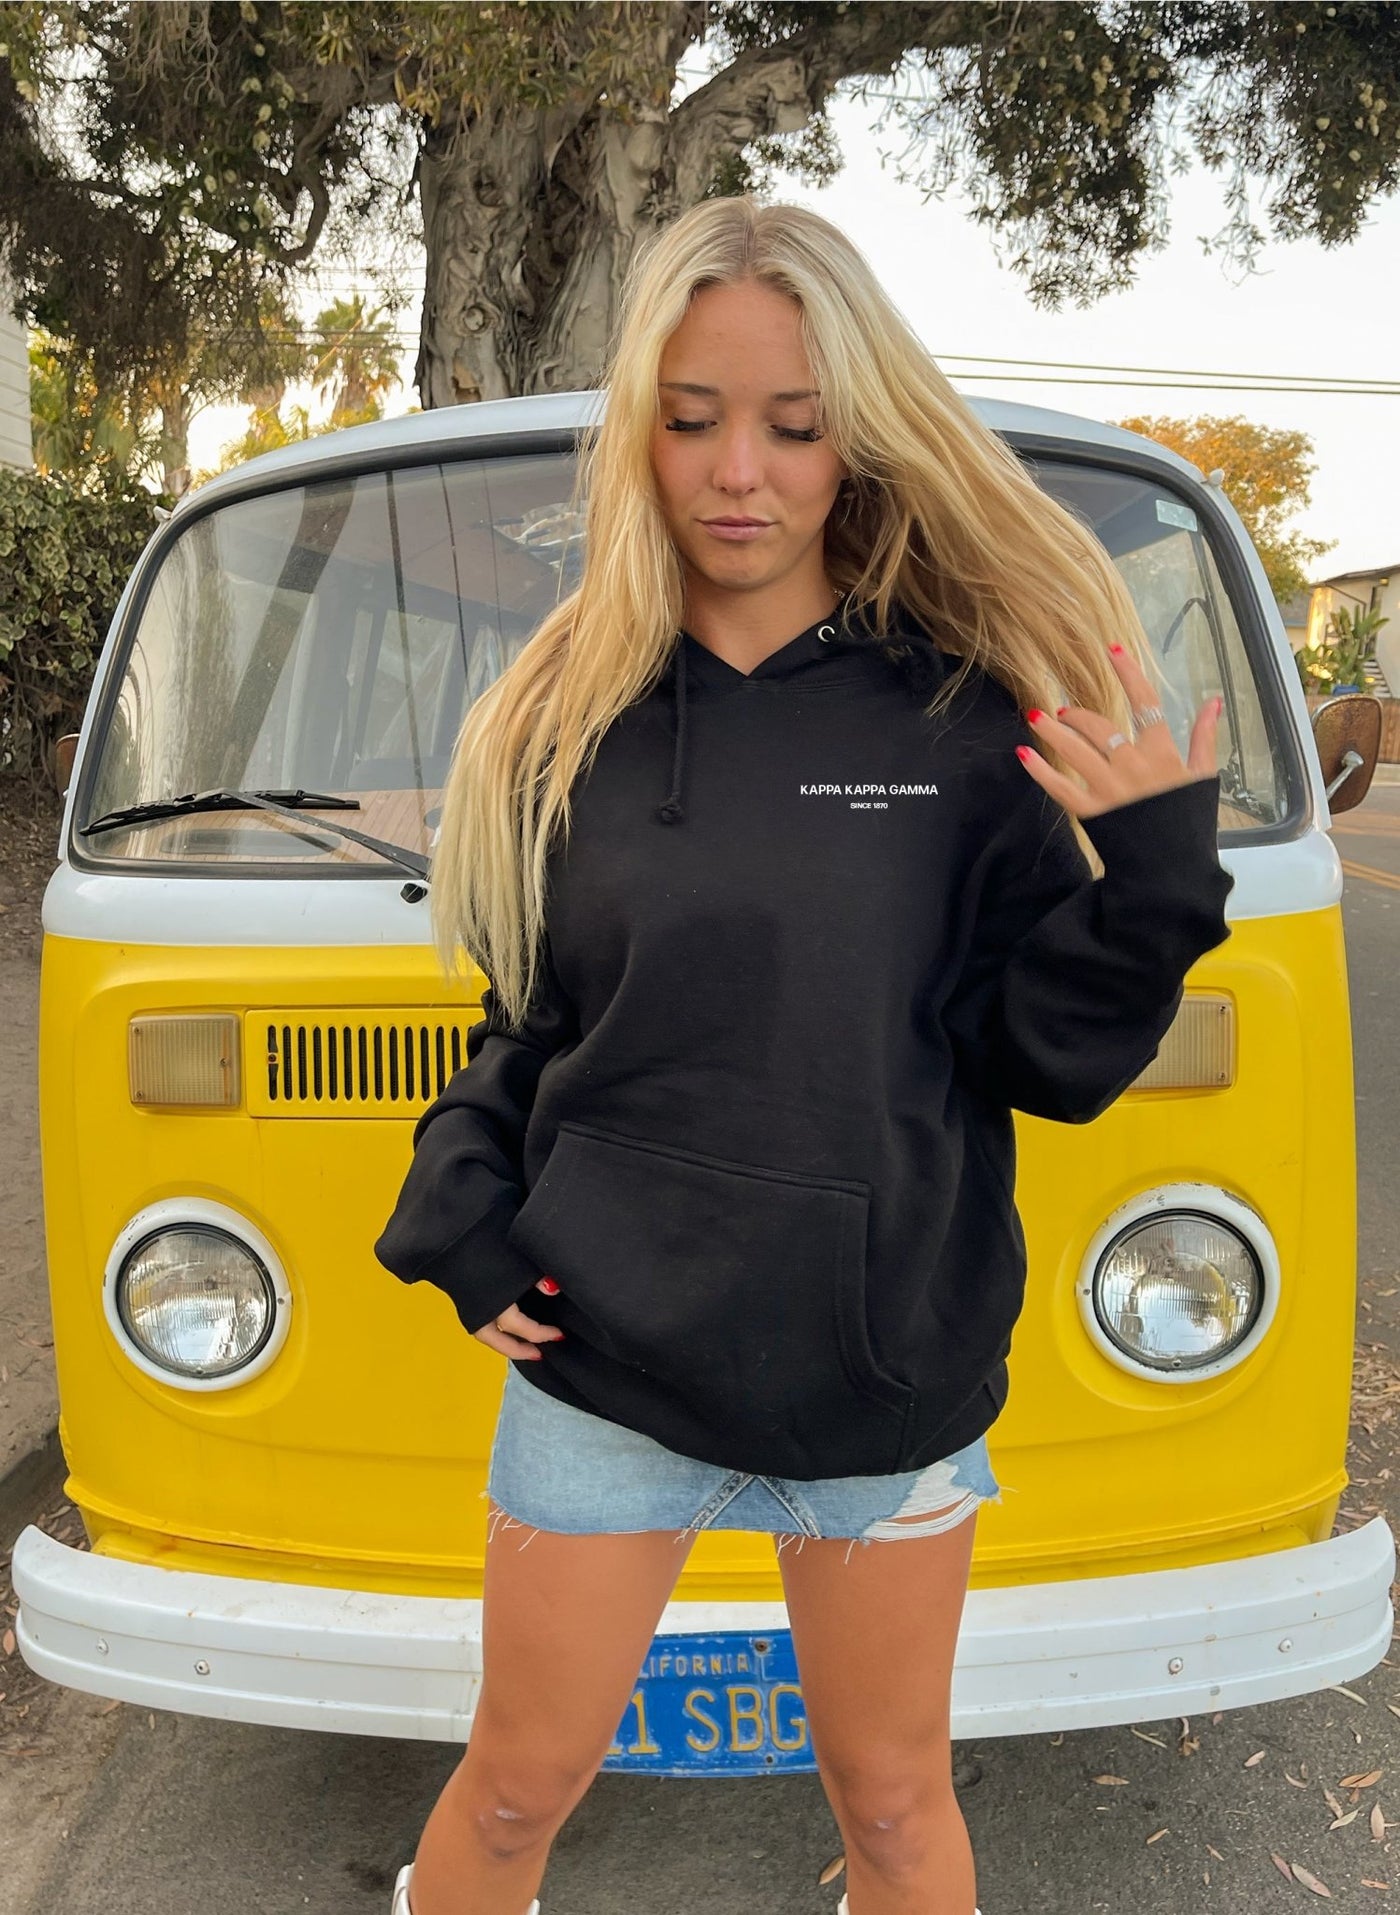 Kappa Kappa Gamma / KKG Simple Trendy Cute Circle Sorority Hoodie Sweatshirt Design Black